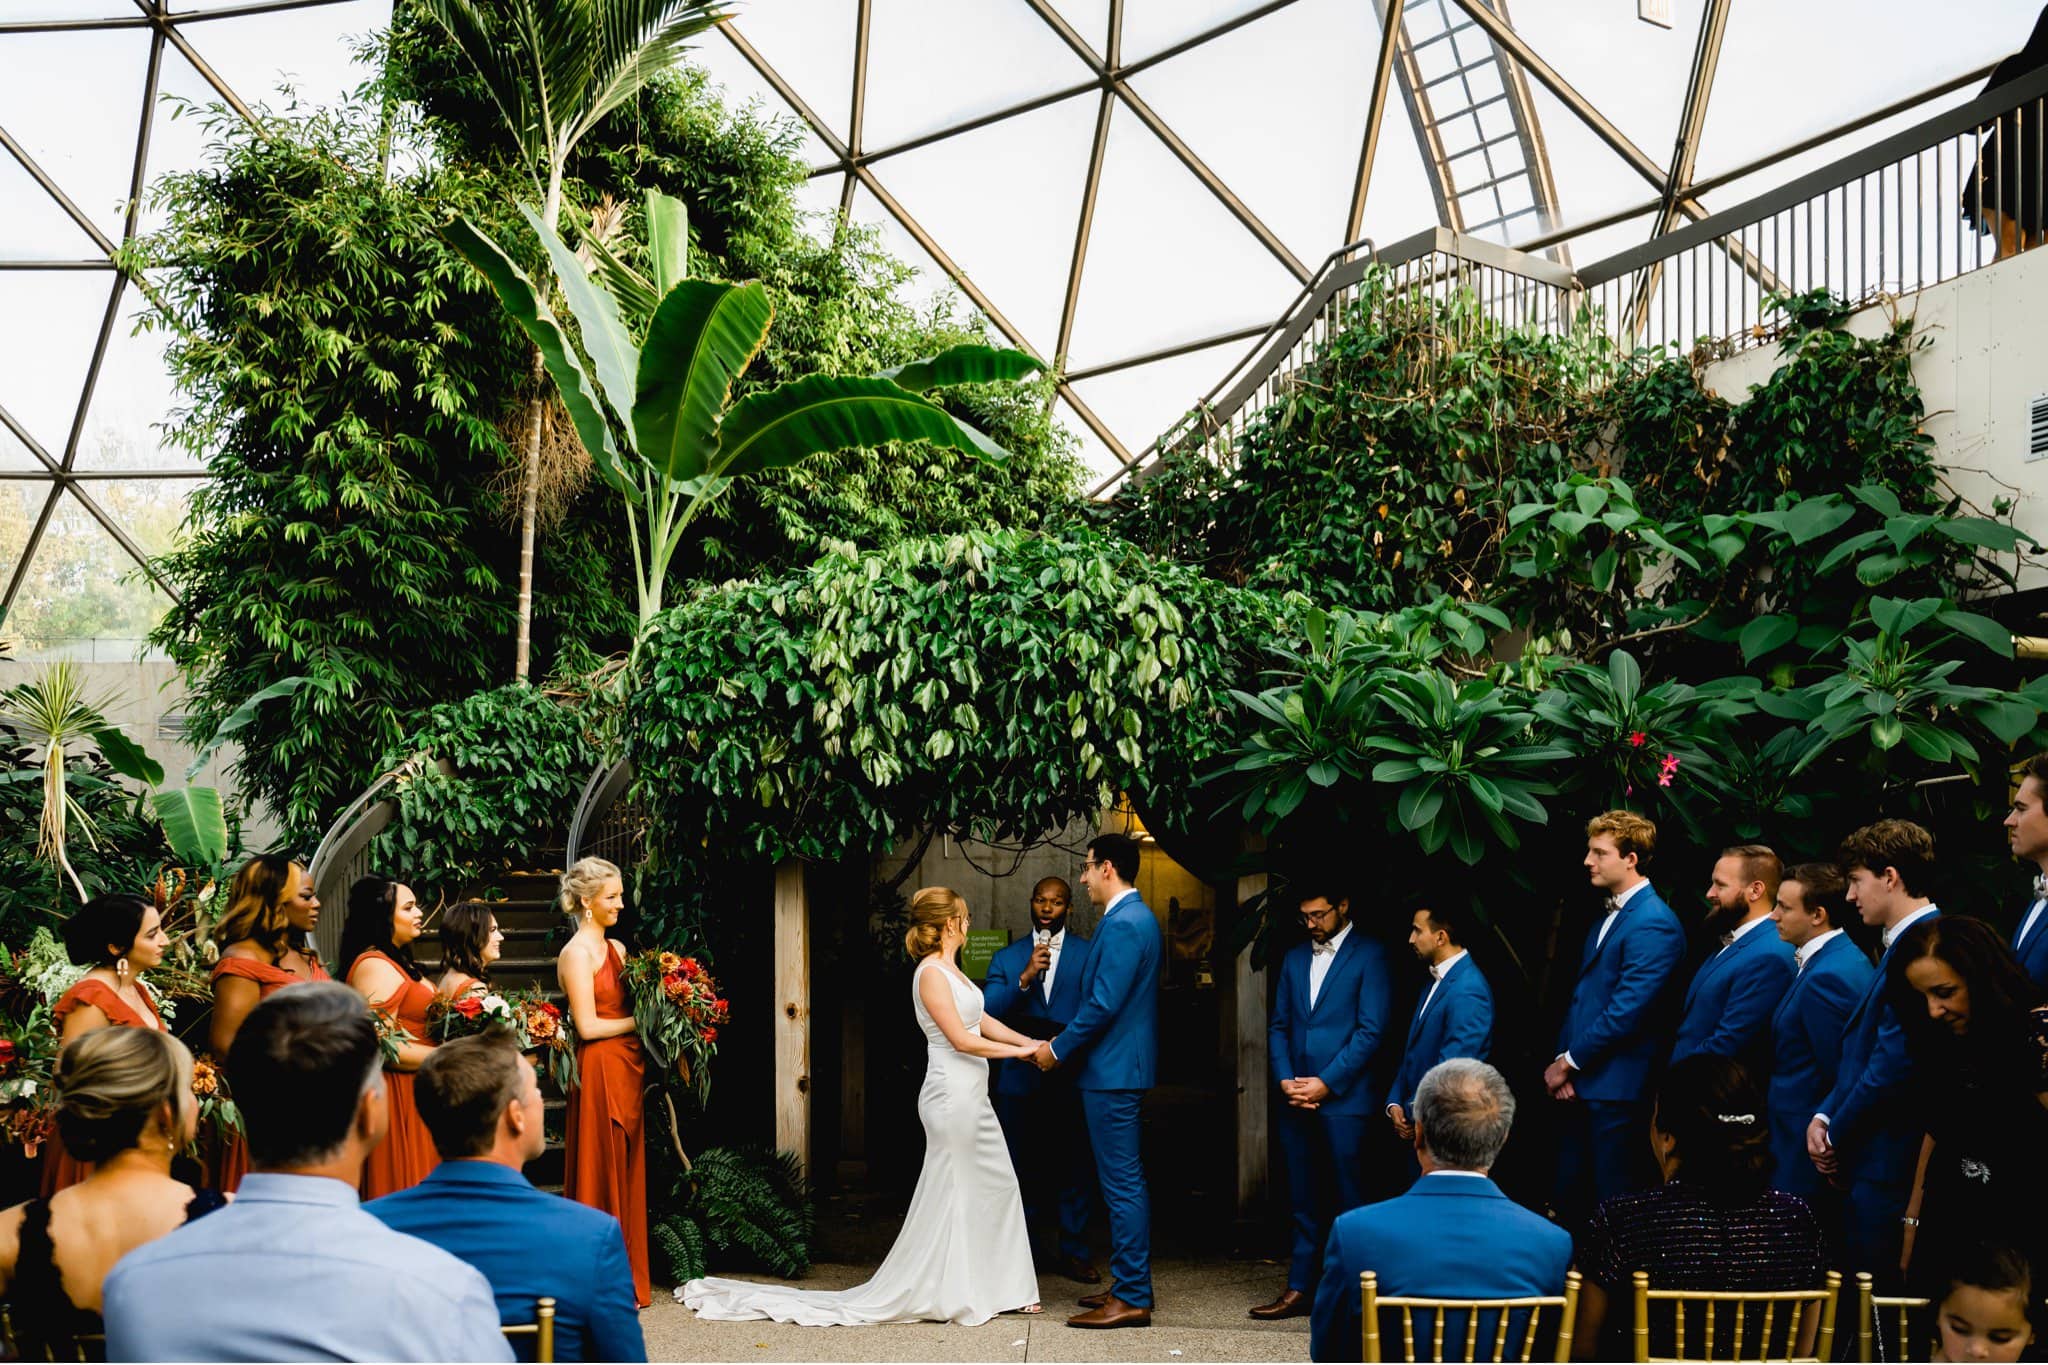 des moines botanical garden wedding photography